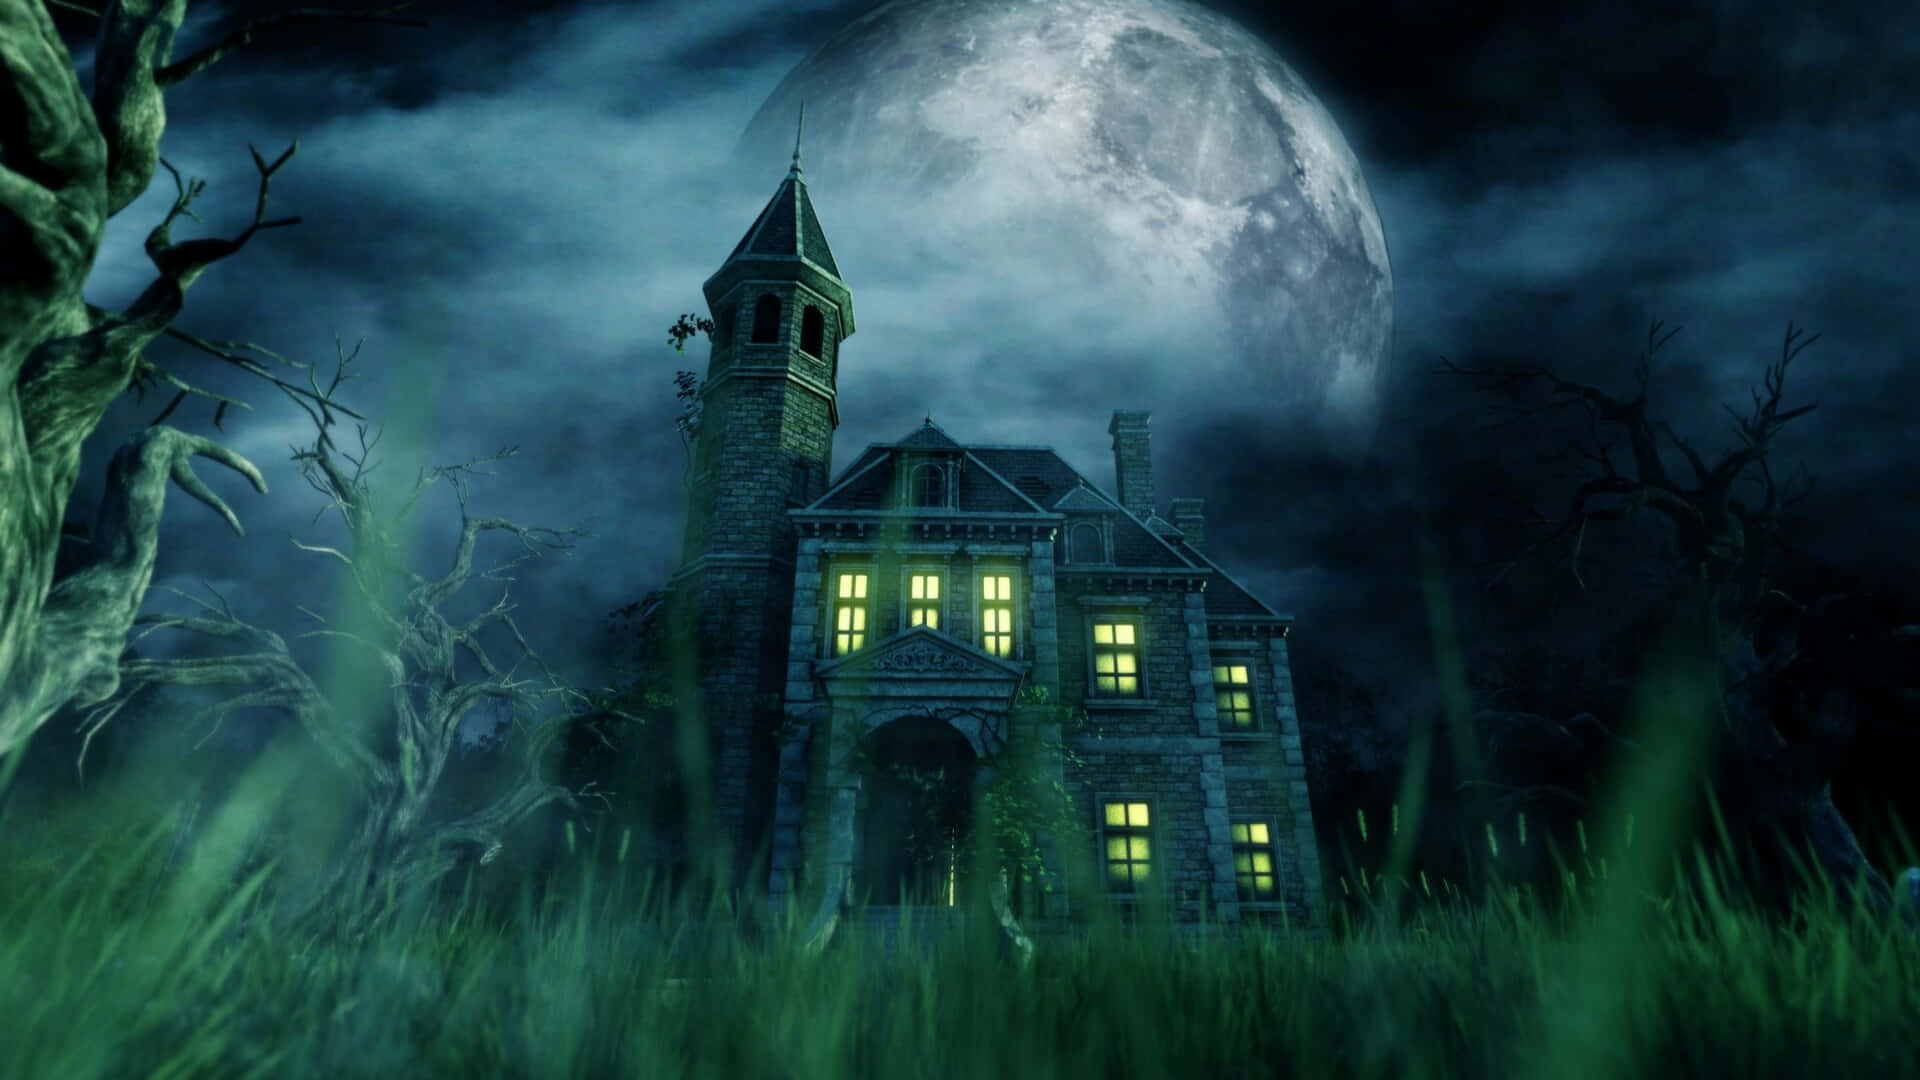 Billeder af Spøgelses Slot dækker hele baggrunden.